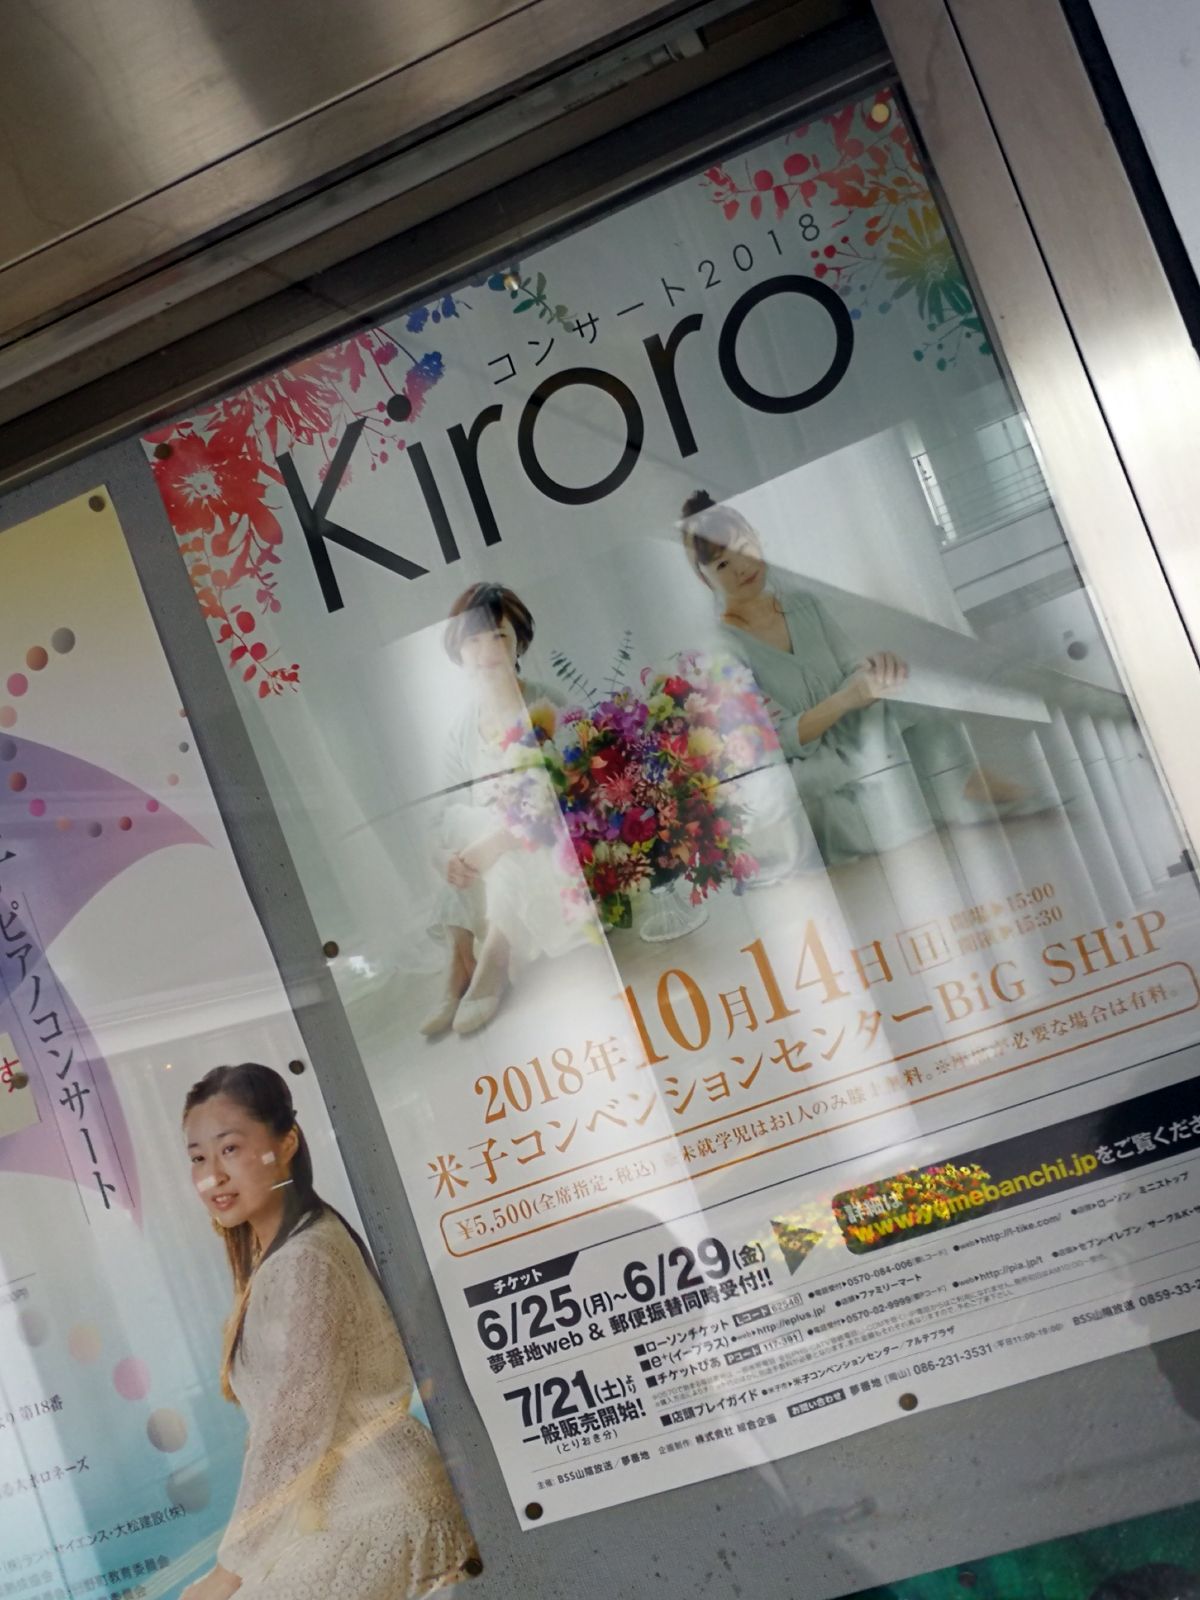 Kiroro コンサート2018